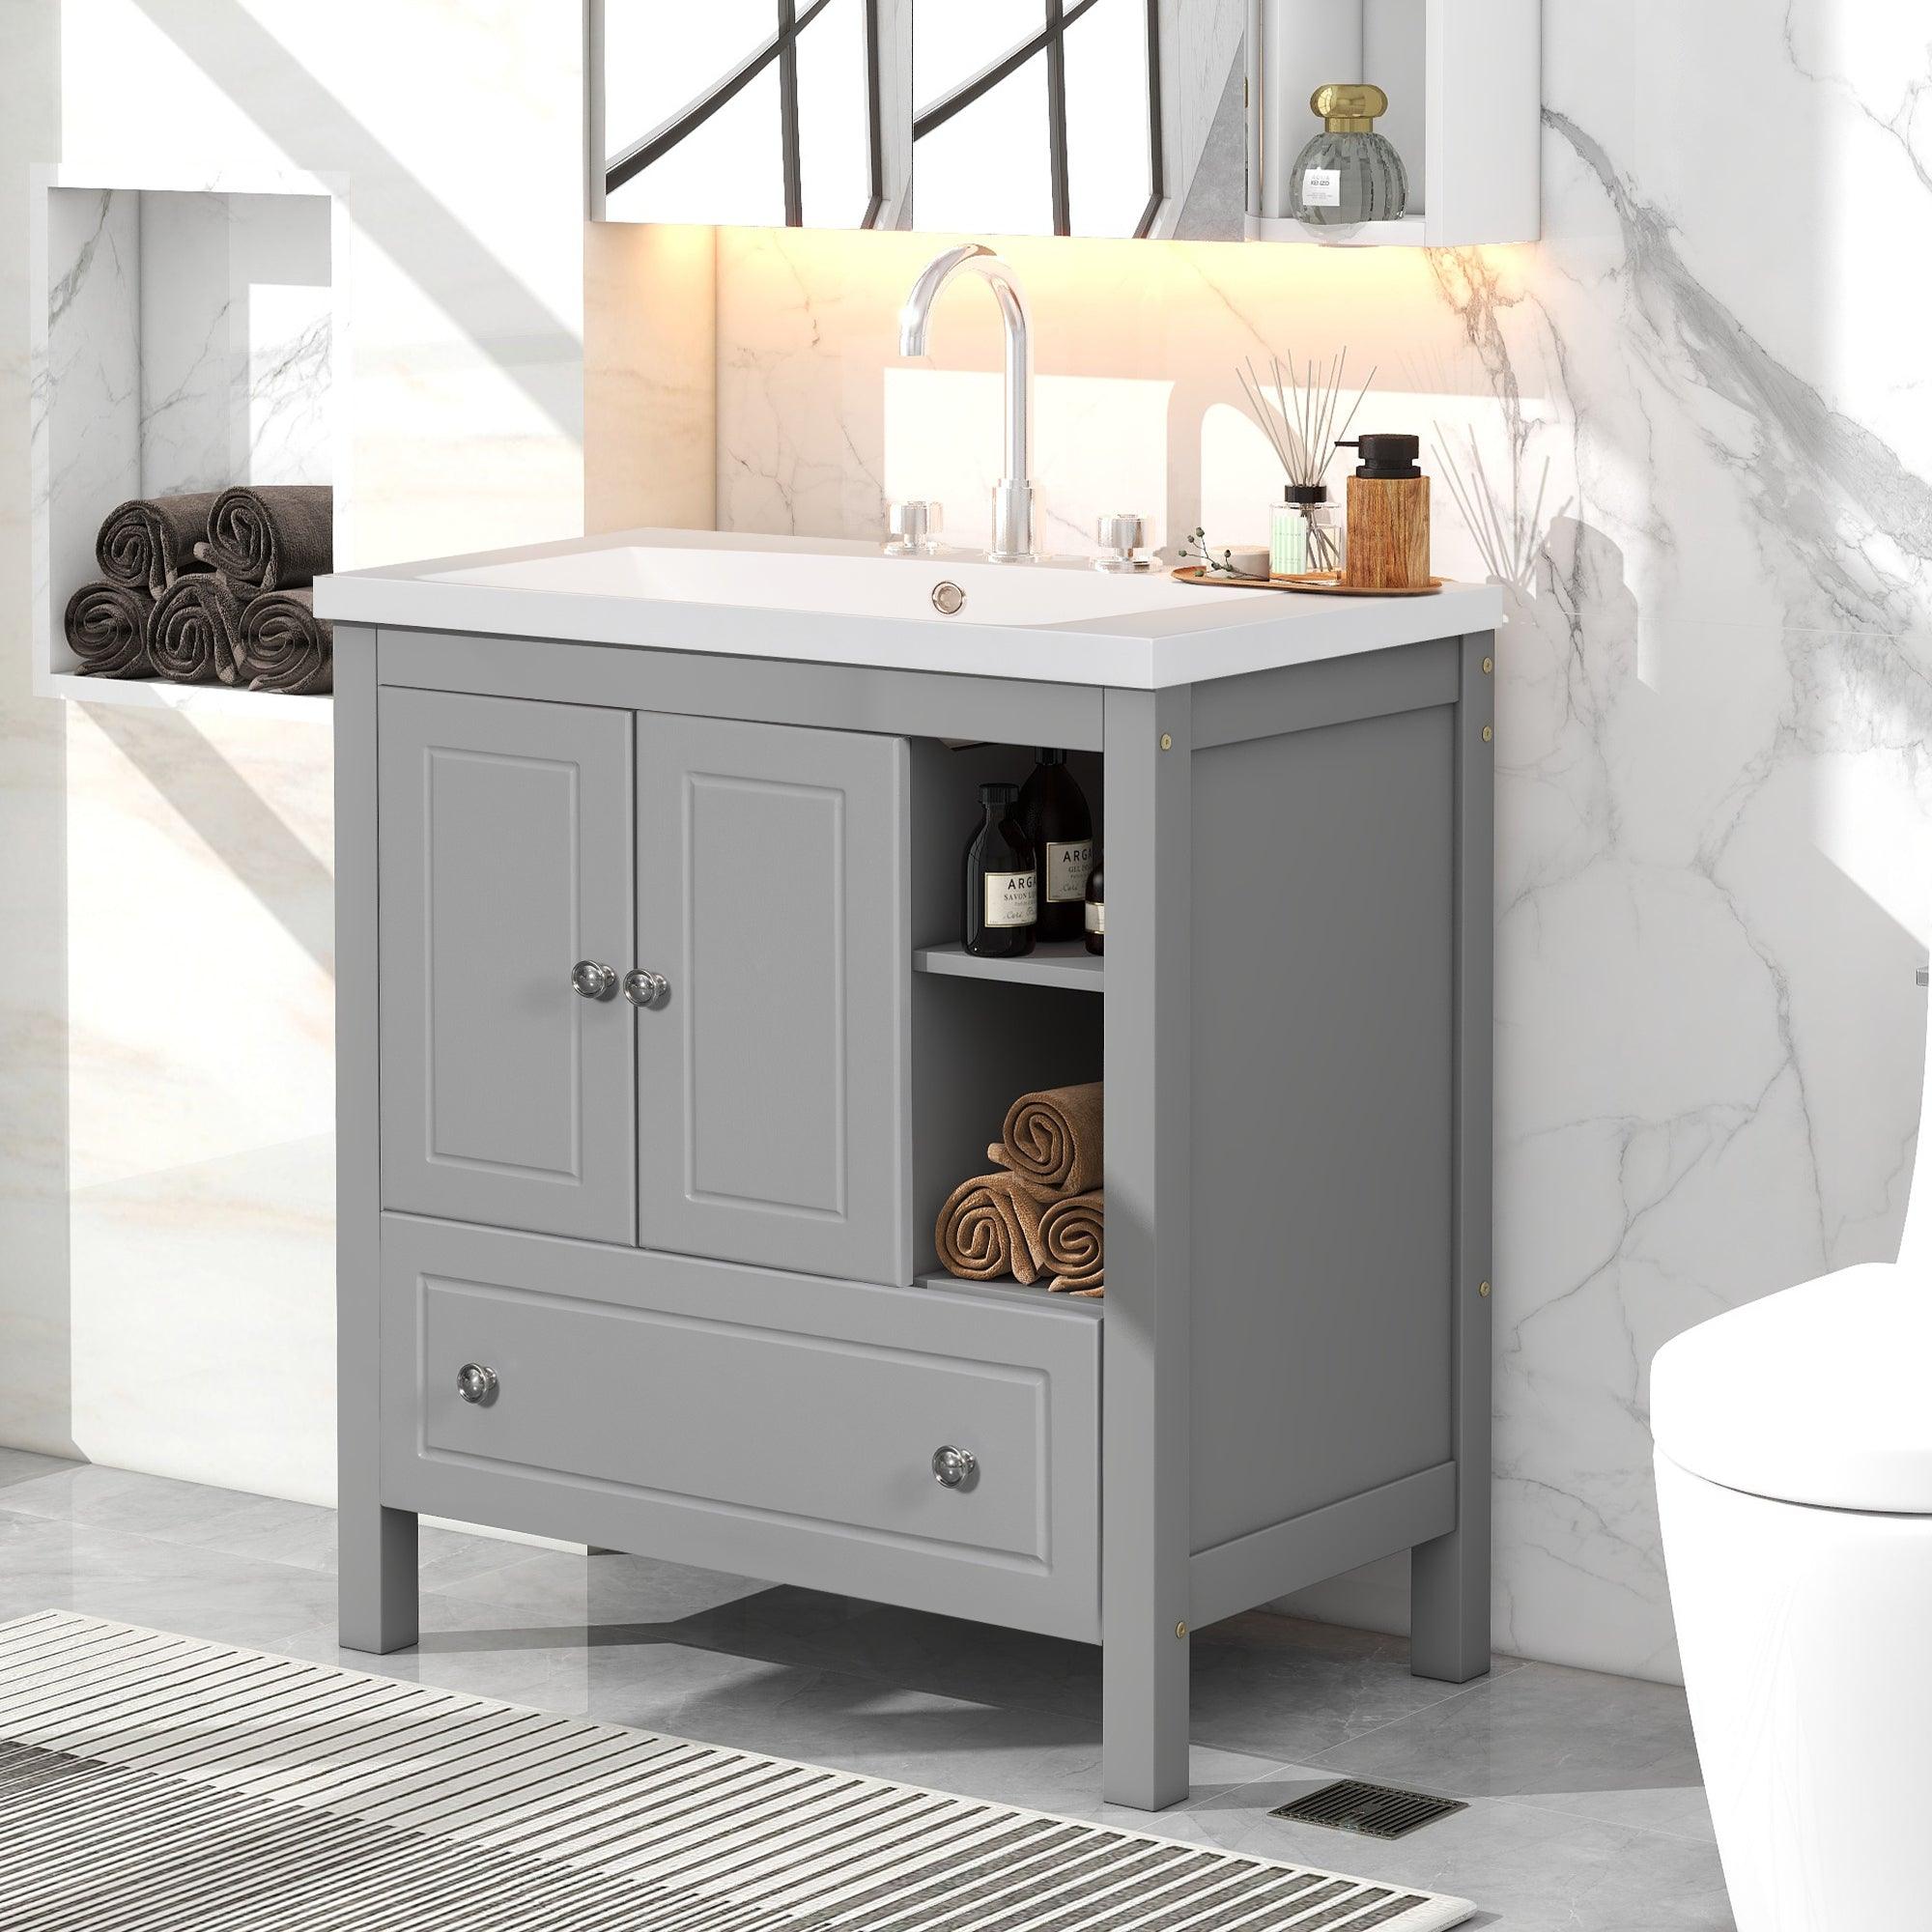 🆓🚛 30" Bathroom Vanity With Sink, Bathroom Storage Cabinet With Doors & Drawers, Solid Wood Frame, Ceramic Sink, Gray